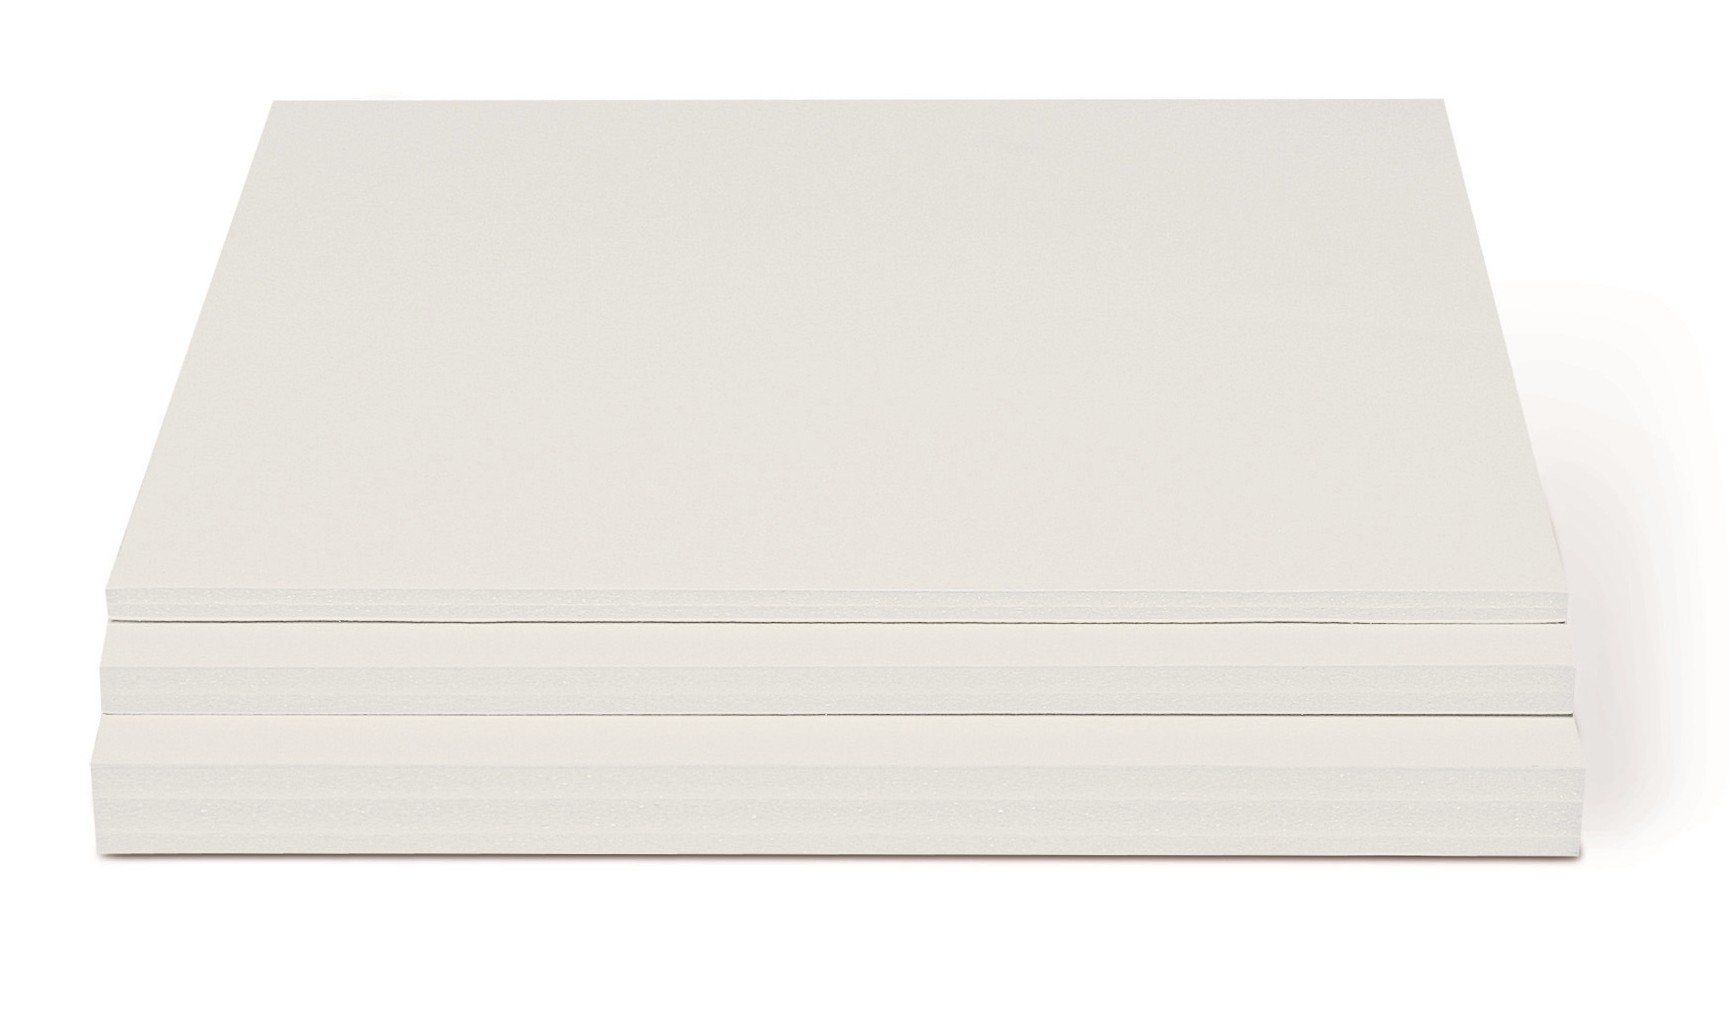 Carton mousse blanc 5 mm grand format 100x140 cm